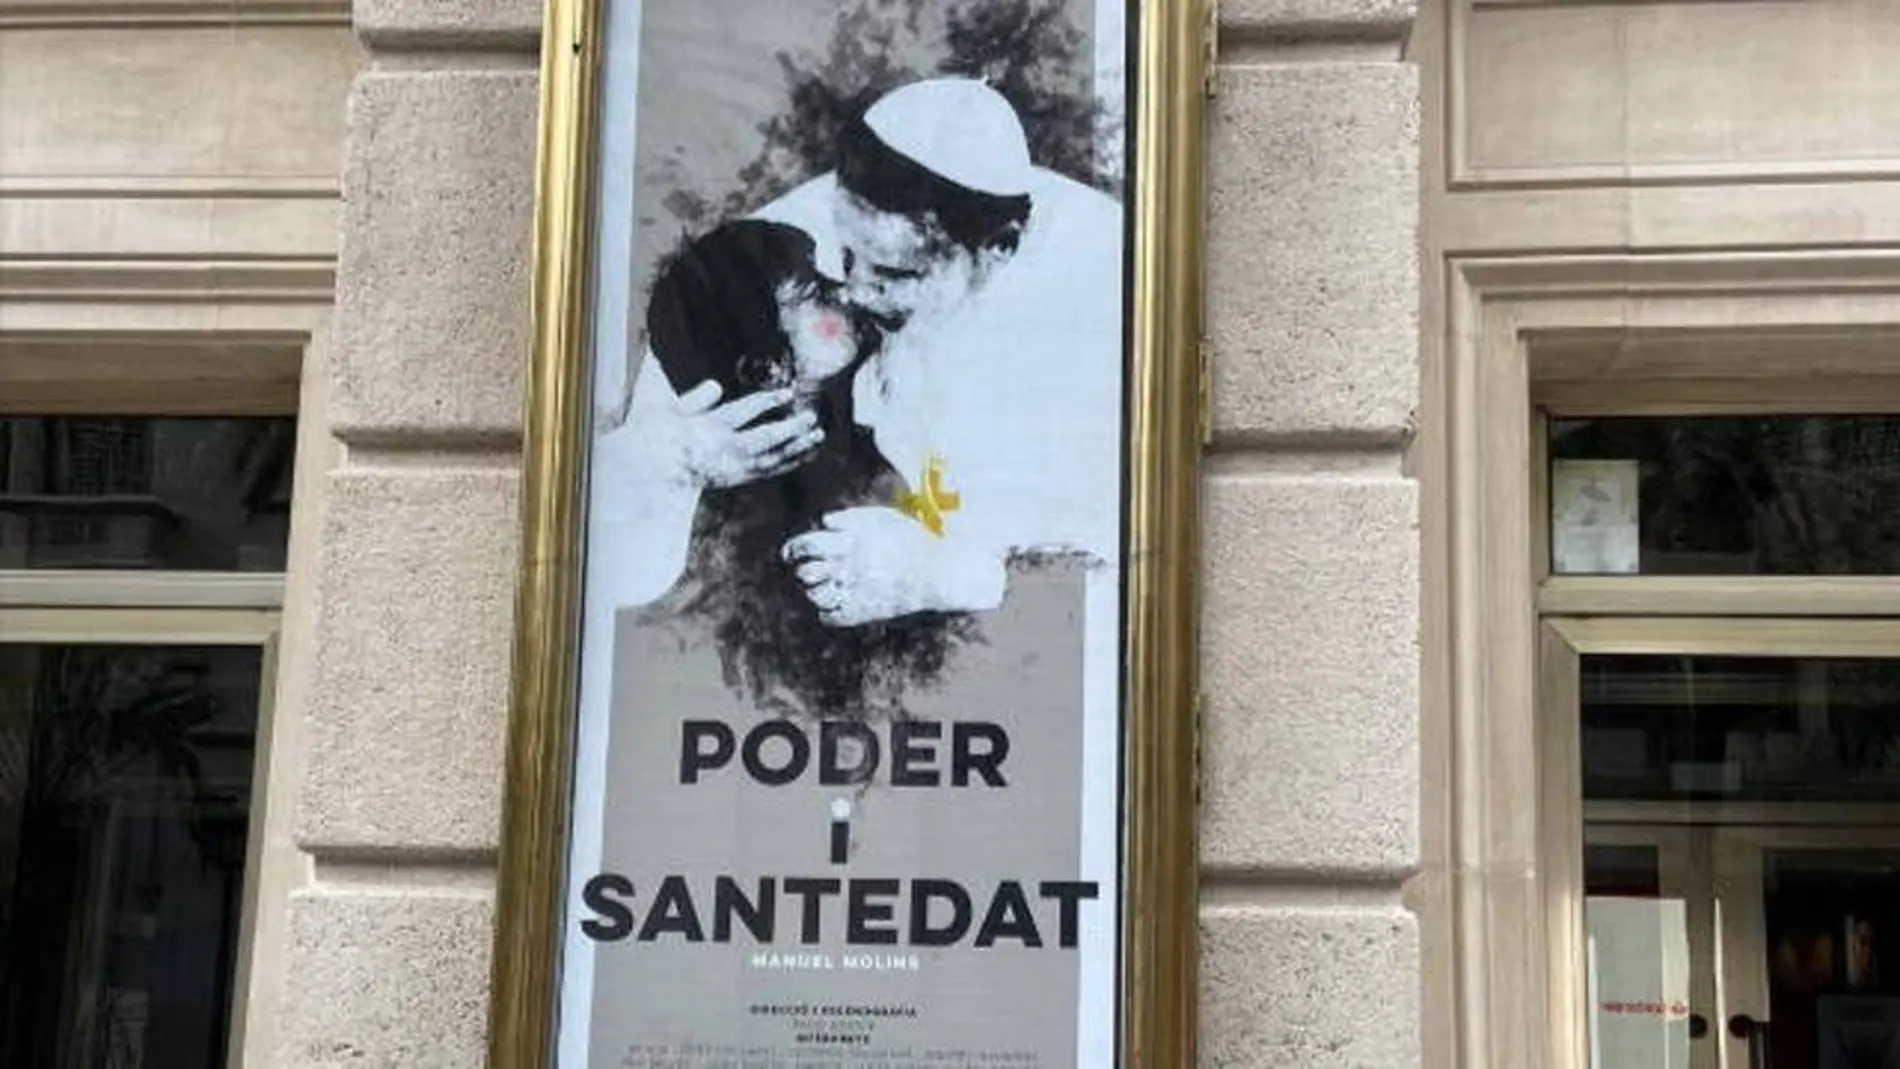 La obra "Poder y Santidad" se estrenó en el Teatro Principal de Valencia el 16 de octubre de 2020